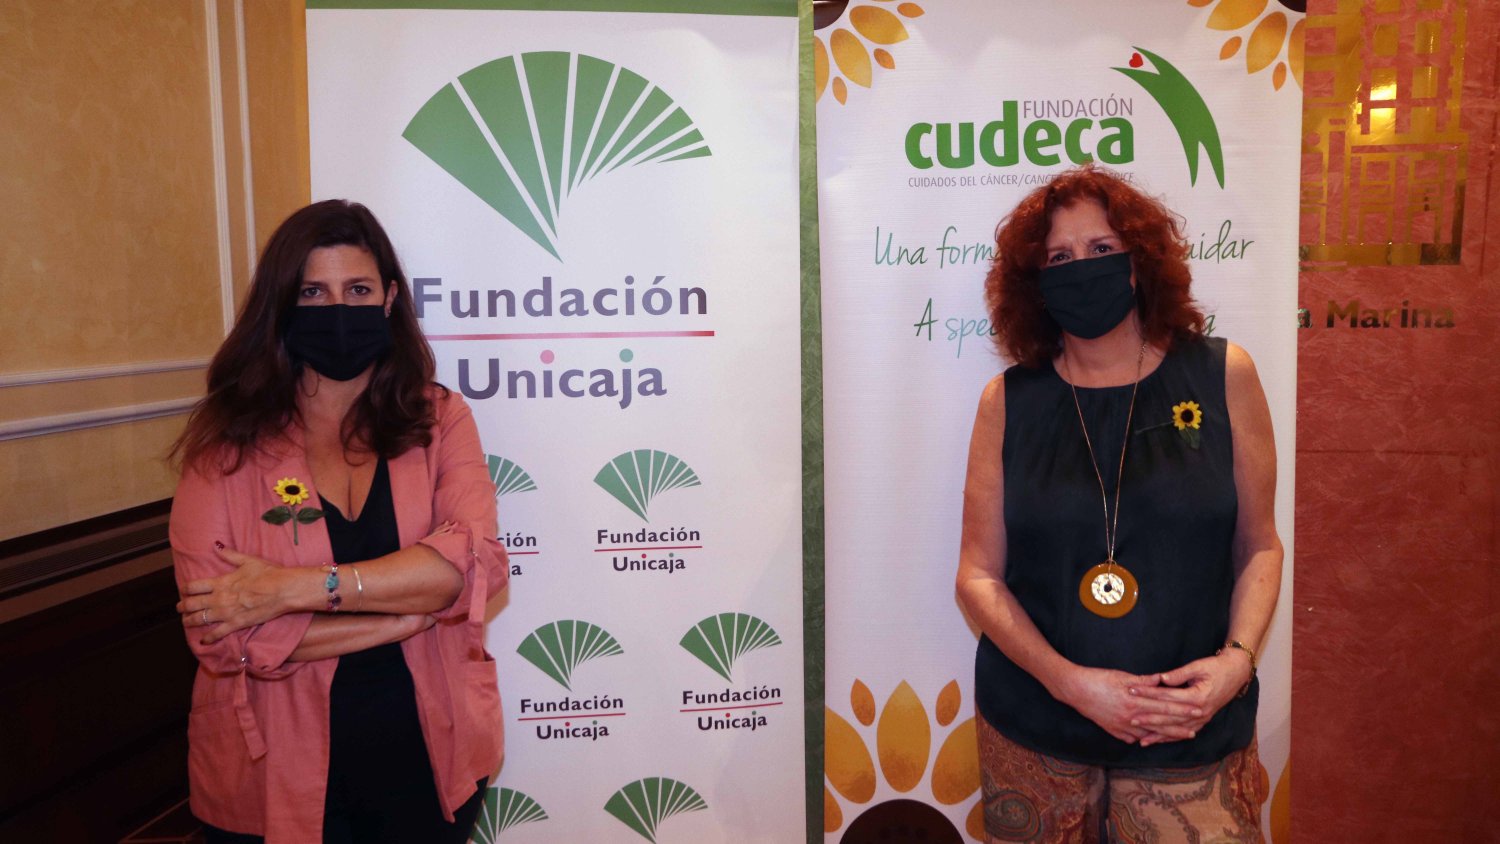 Fundación Unicaja apoya la labor de la Fundación Cudeca y su Unidad de Atención Domiciliaria